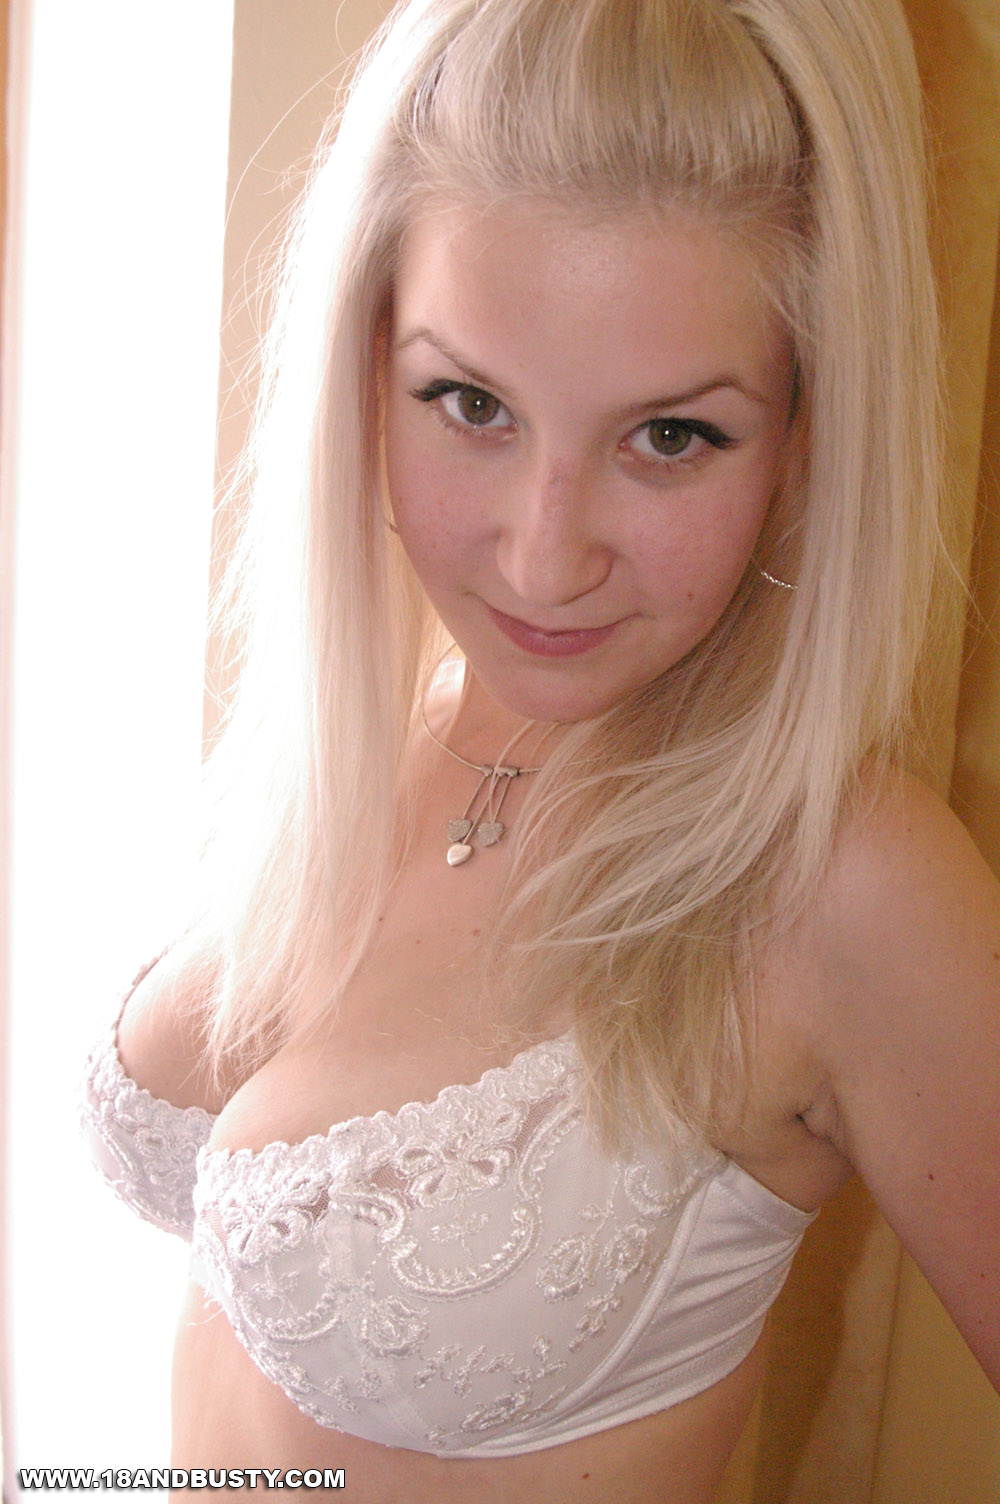 wpid-blonde-busty-coed-beauty3.jpg